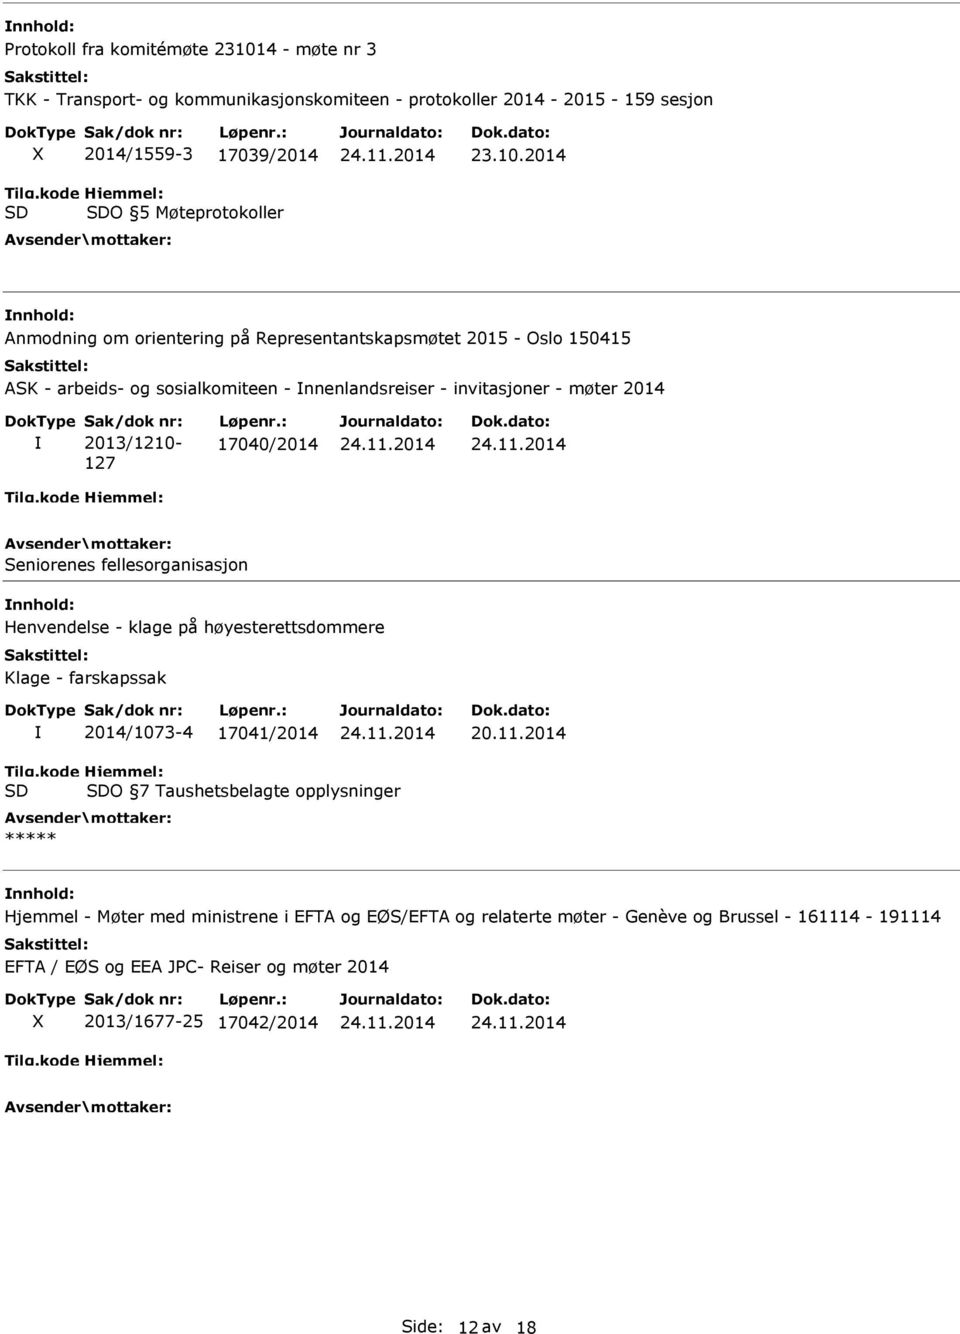 2014 Anmodning om orientering på Representantskapsmøtet 2015 - Oslo 150415 ASK - arbeids- og sosialkomiteen - nnenlandsreiser - invitasjoner - møter 2014 2013/1210-127